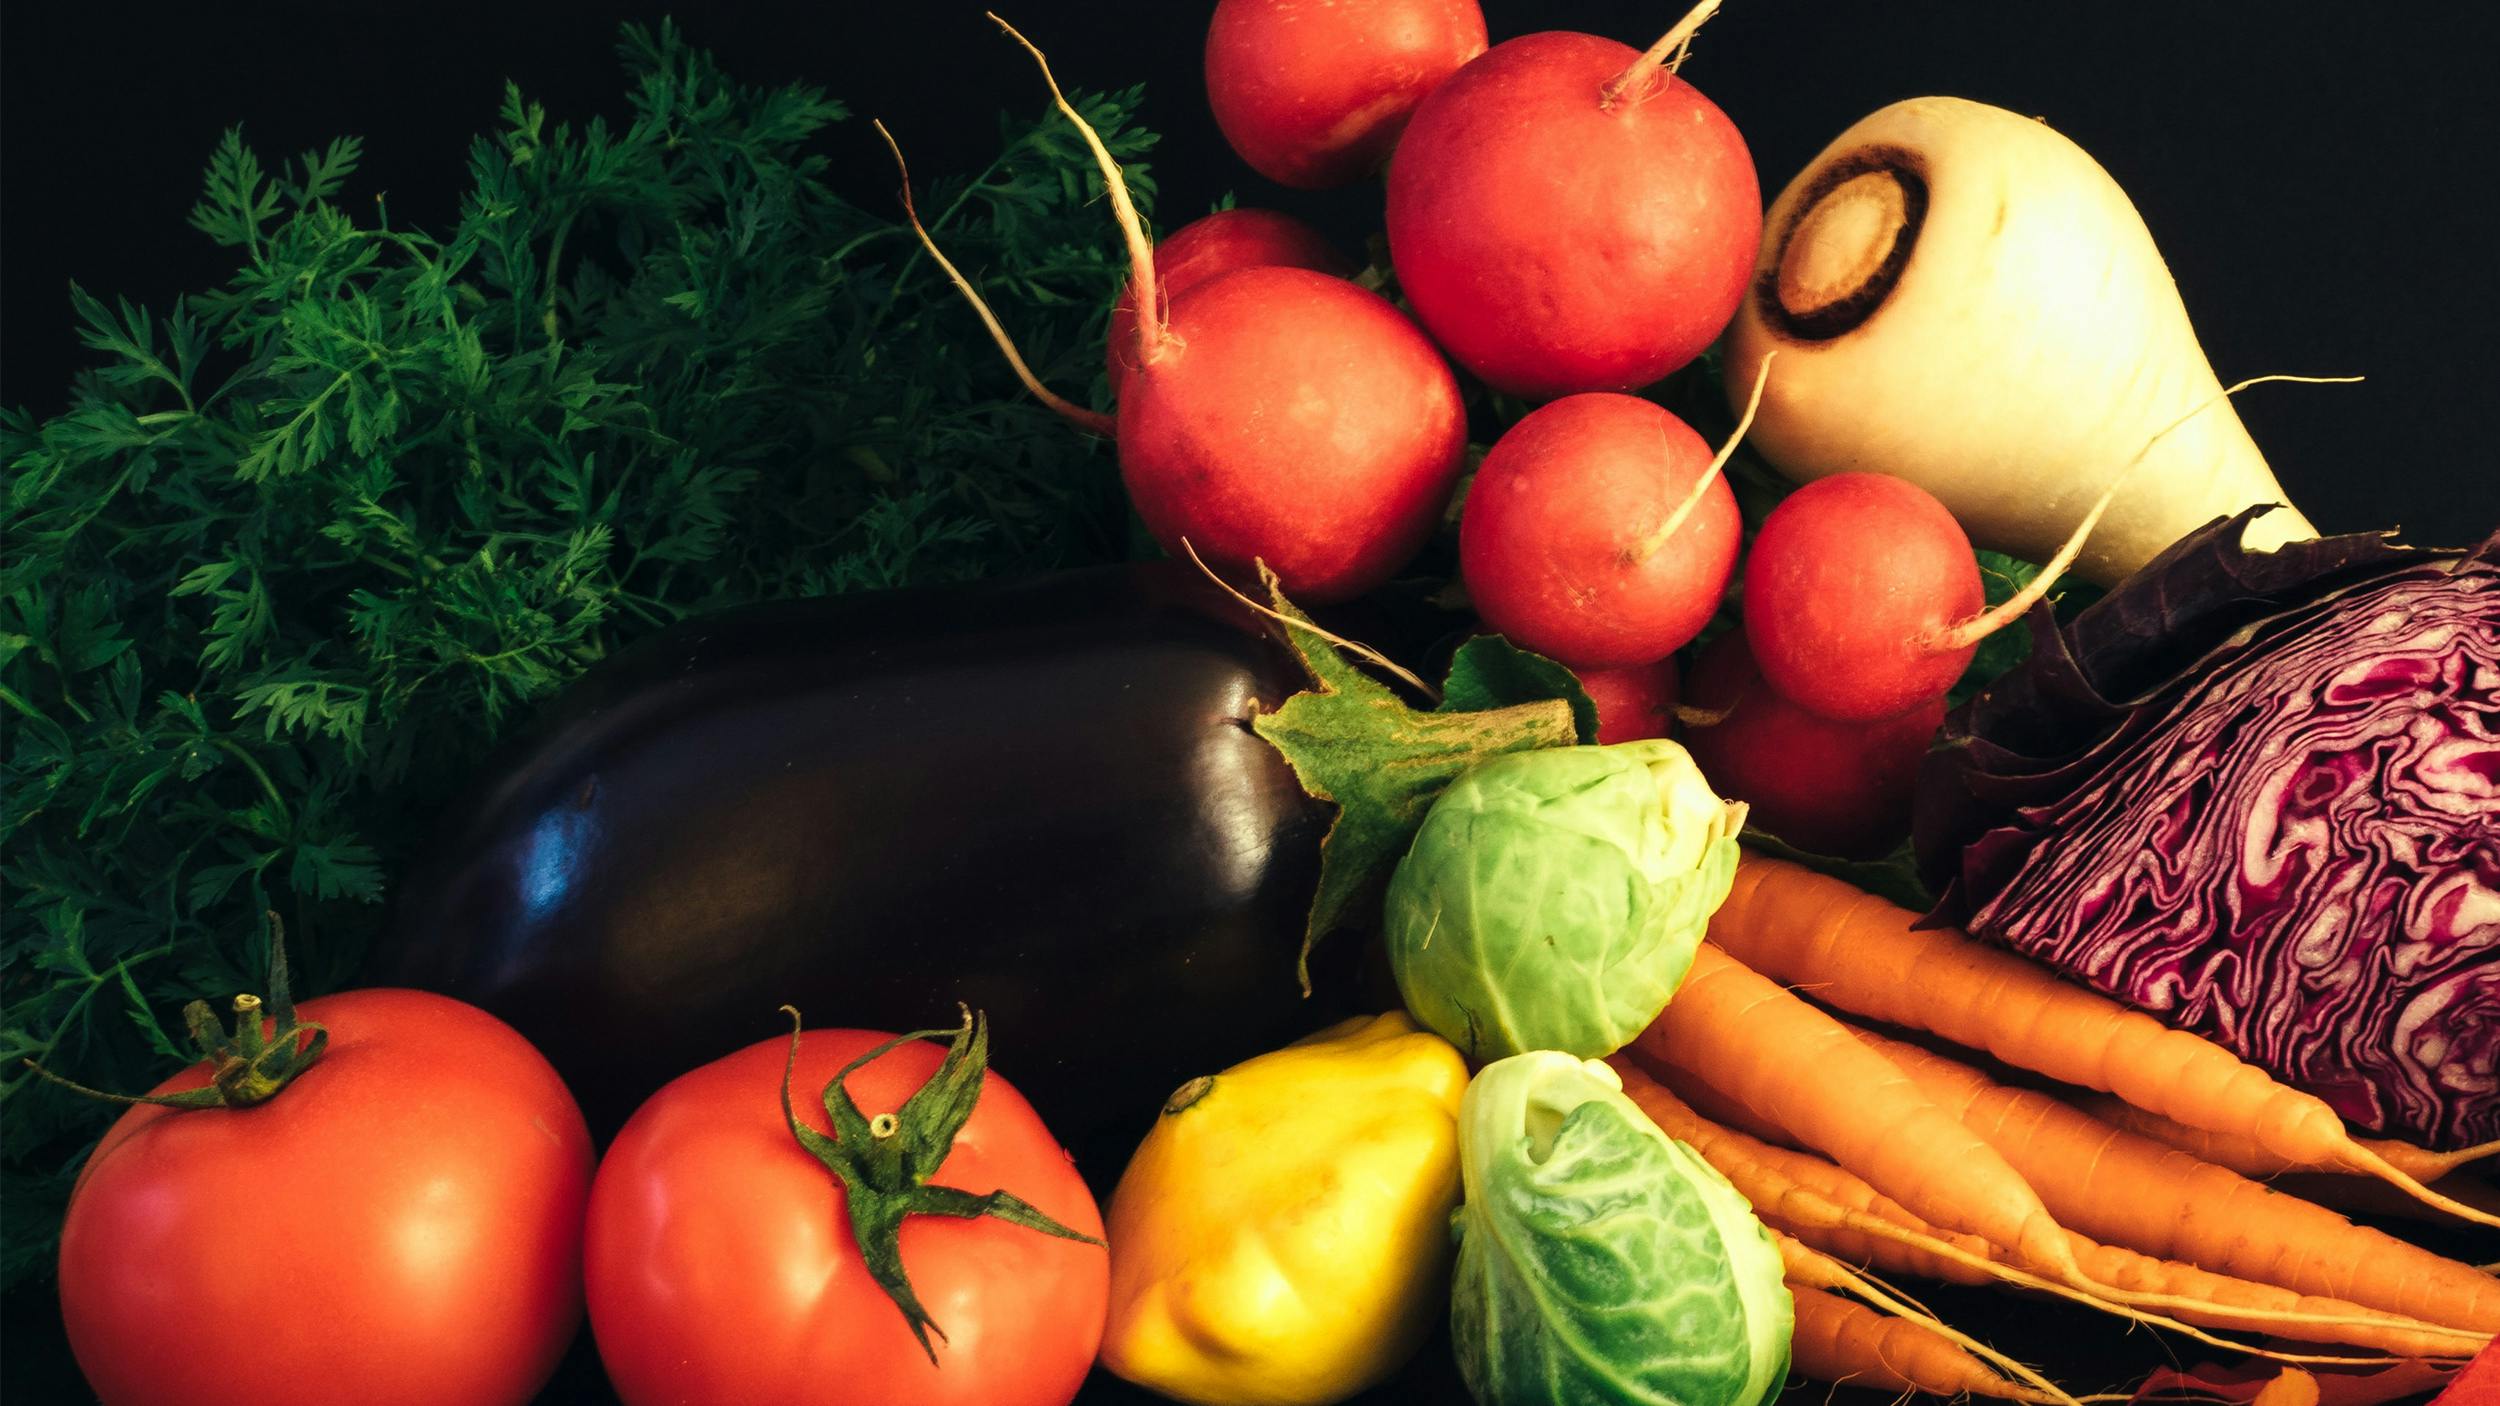 Man sieht verschiedene Gemüse in ansprechender Form und Farbe in Großaufnahme, Kohl, Paprika, Tomaten, Lauch